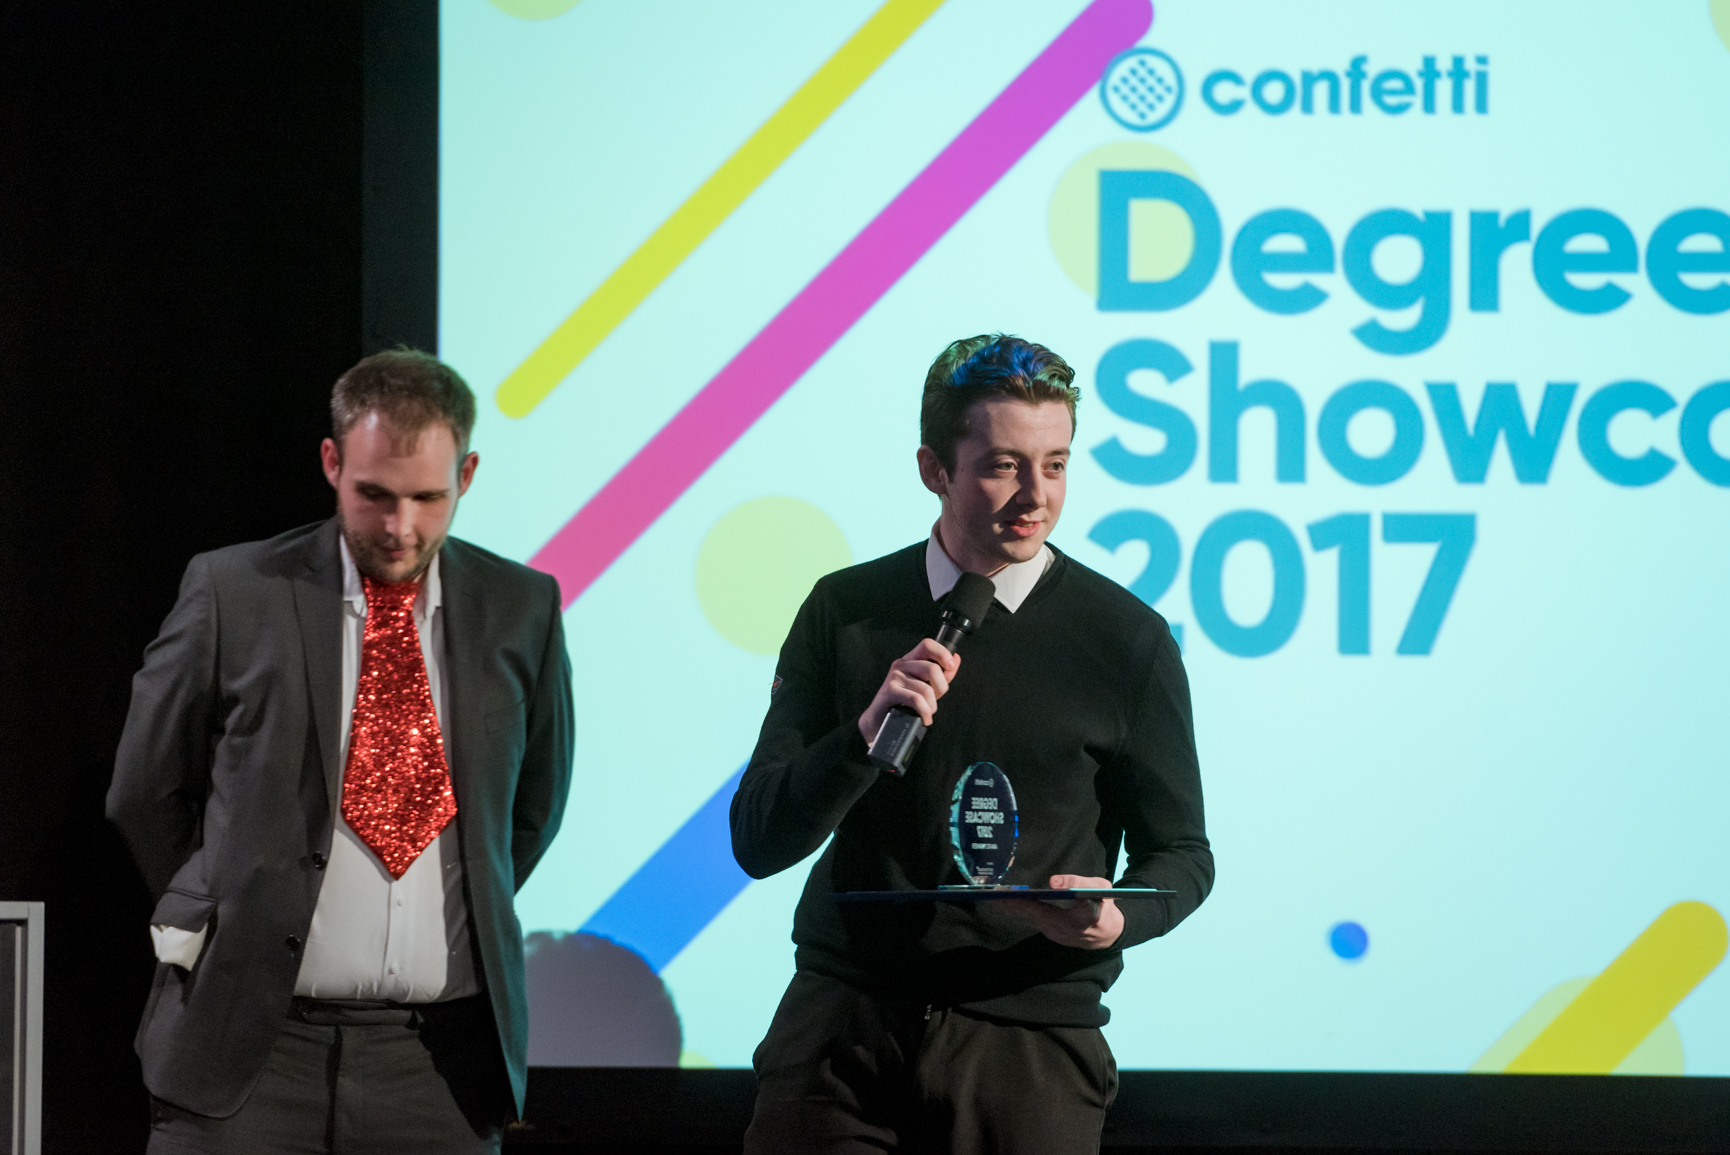 Confetti Degree Showcase Awards 2017